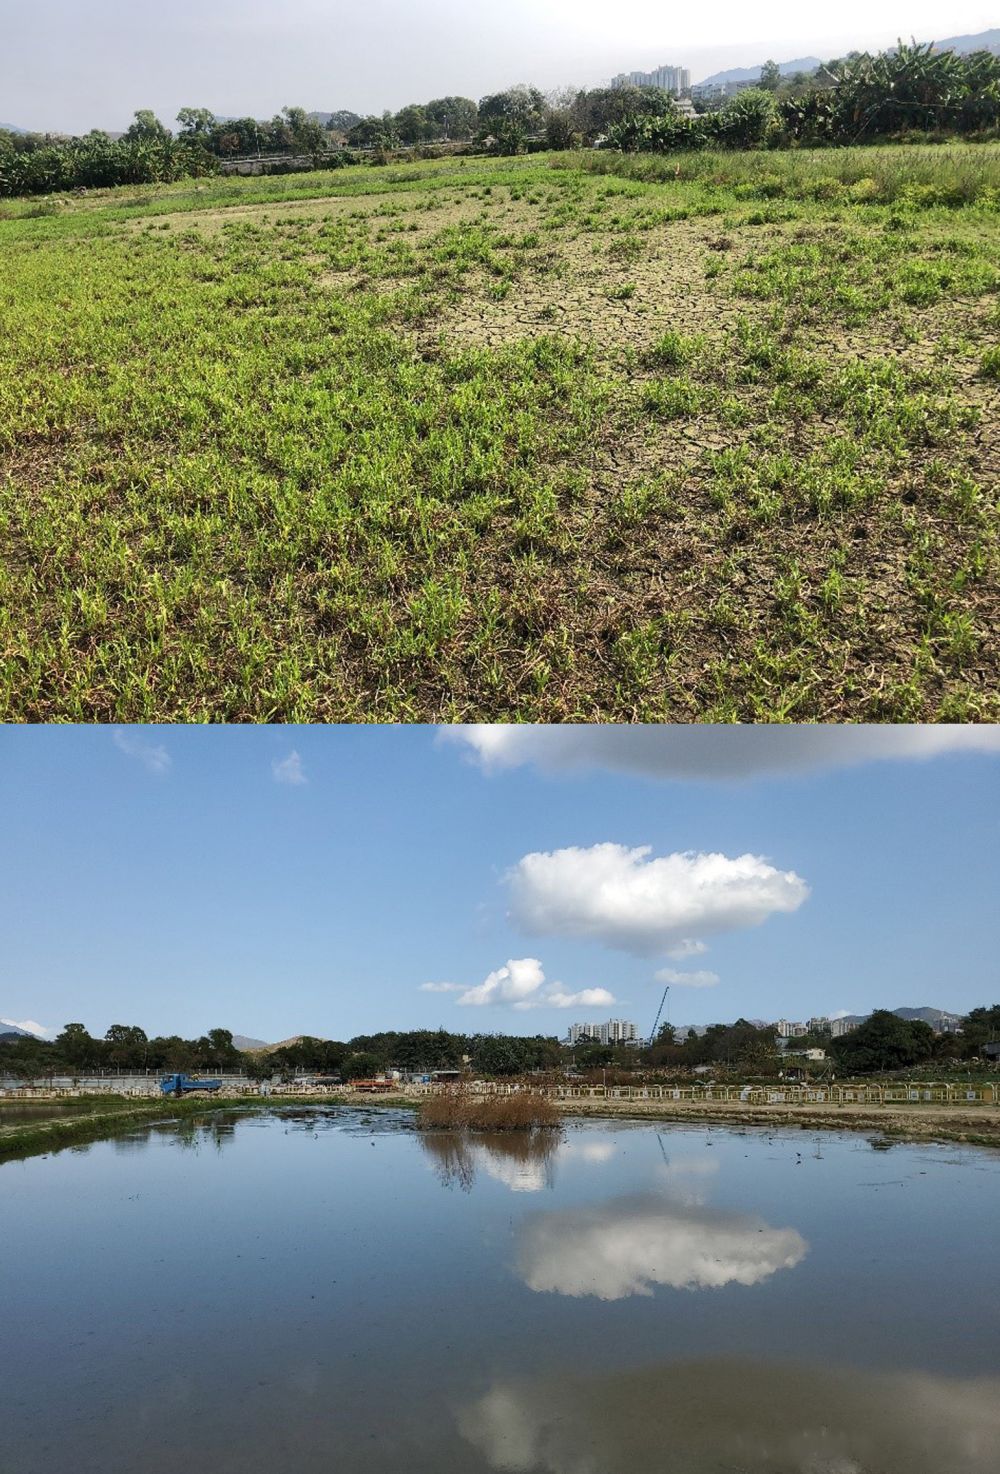 土拓署把部分旱田（上图）和荒废的农地修复成湿地生境（下图），让整个塱原增加约8公顷的湿地。